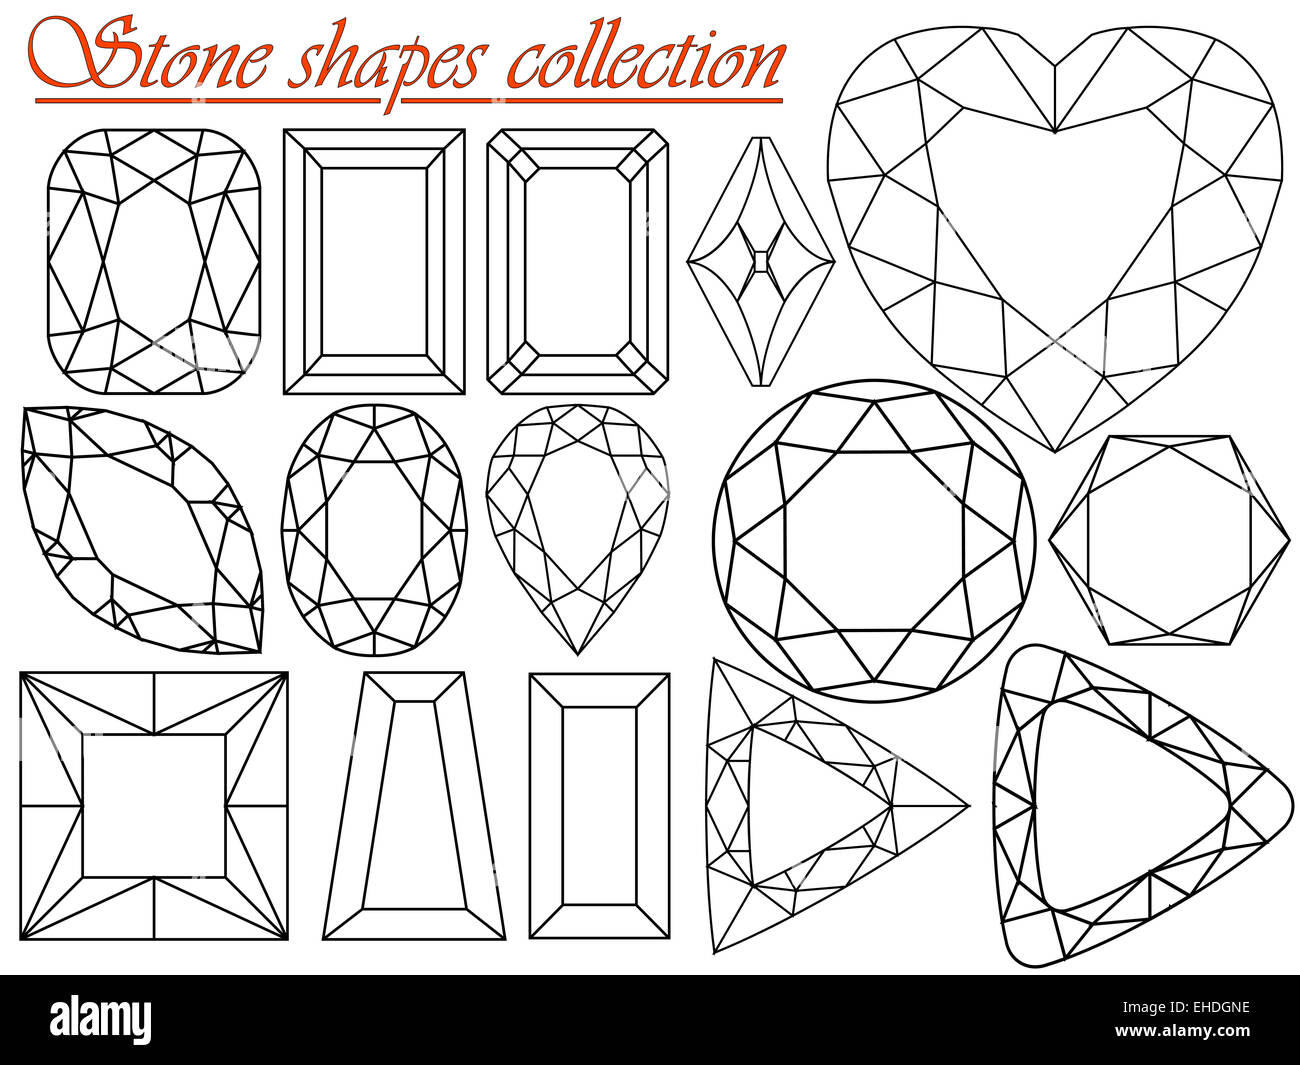 Stone raccolta Shapes Foto Stock